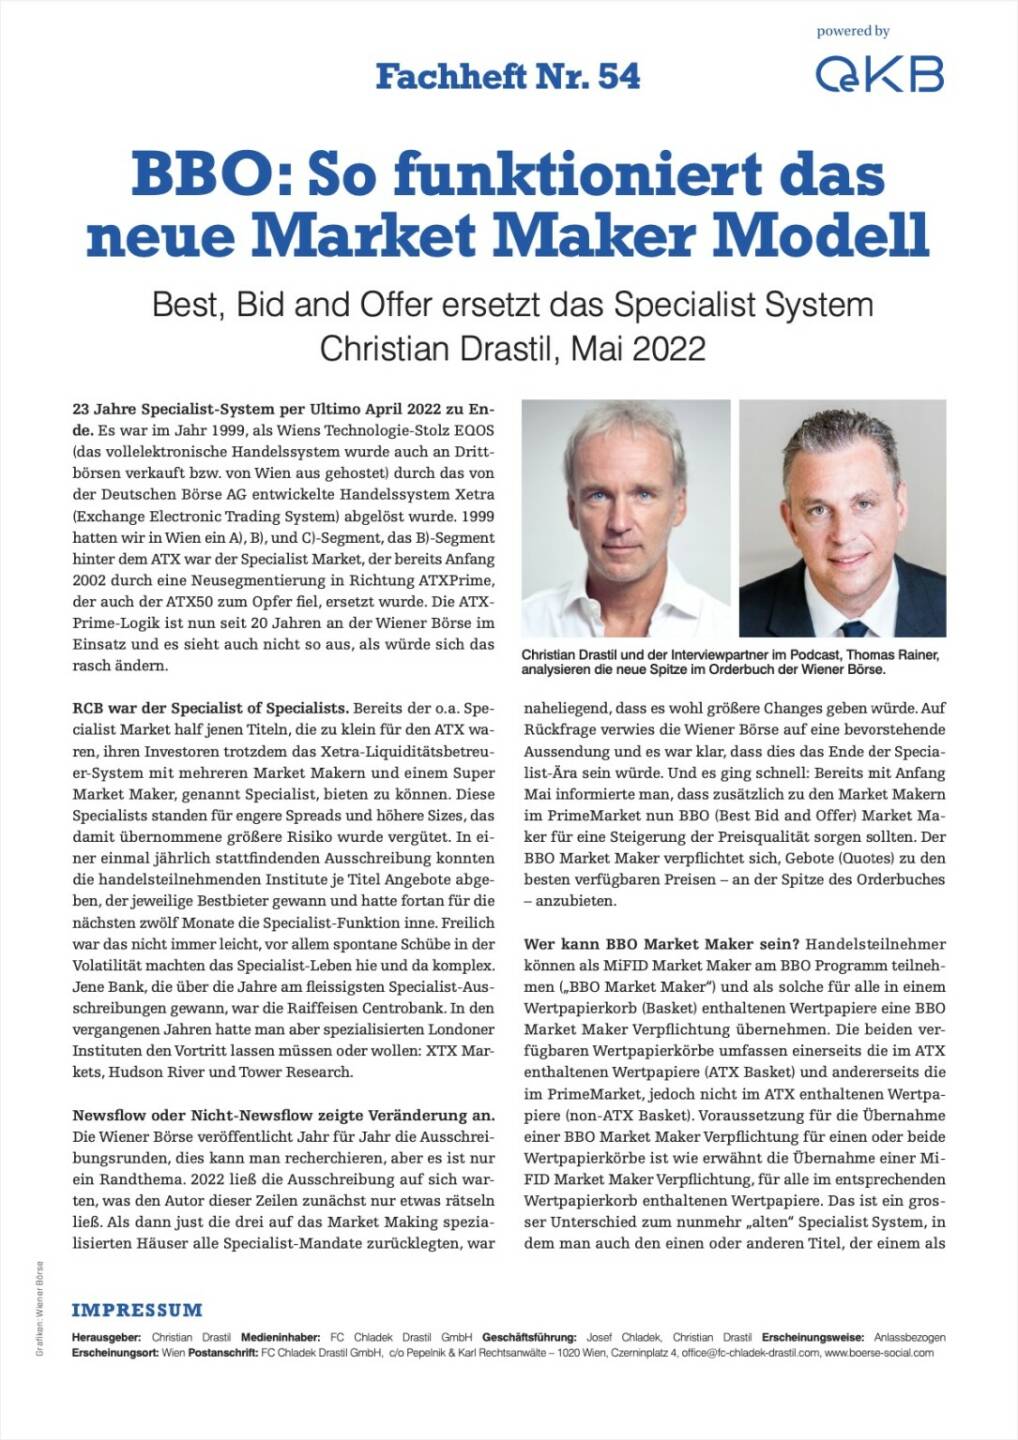 Fachheft 54 - BBO: So funktioniert das neue Market Maker Modell